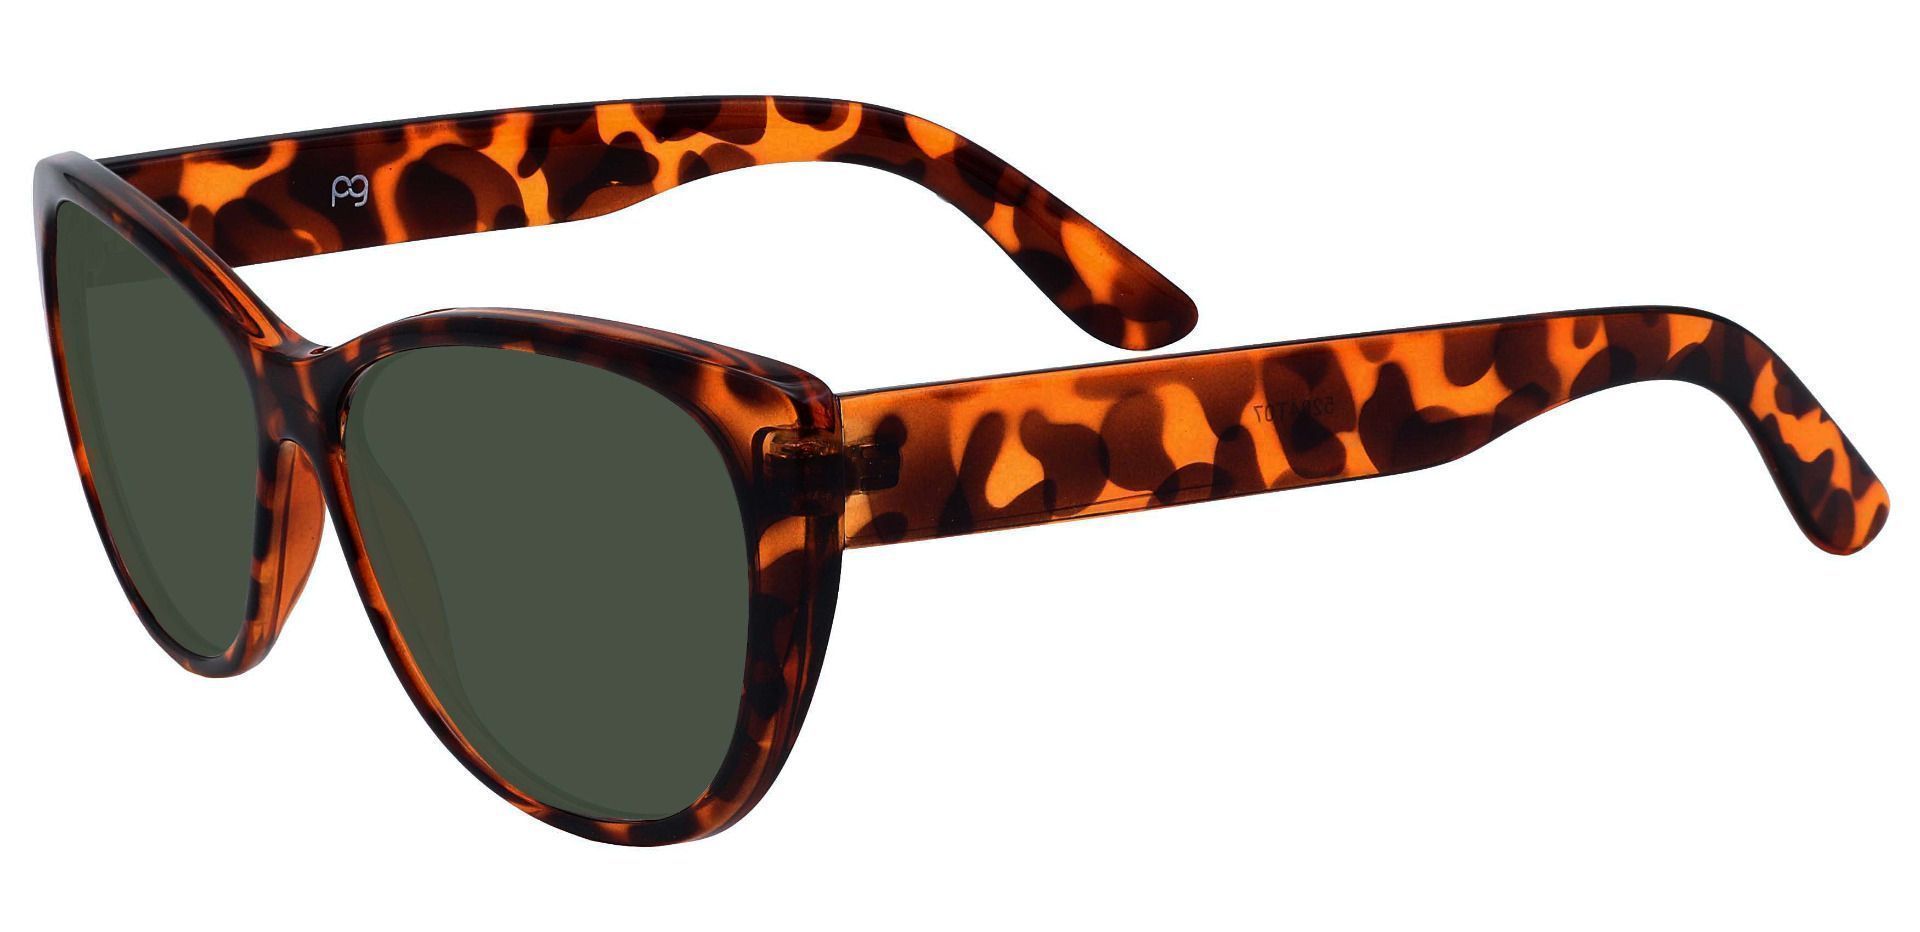 Lynn Cat-Eye Prescription Sunglasses - Tortoise Frame With Green Lenses